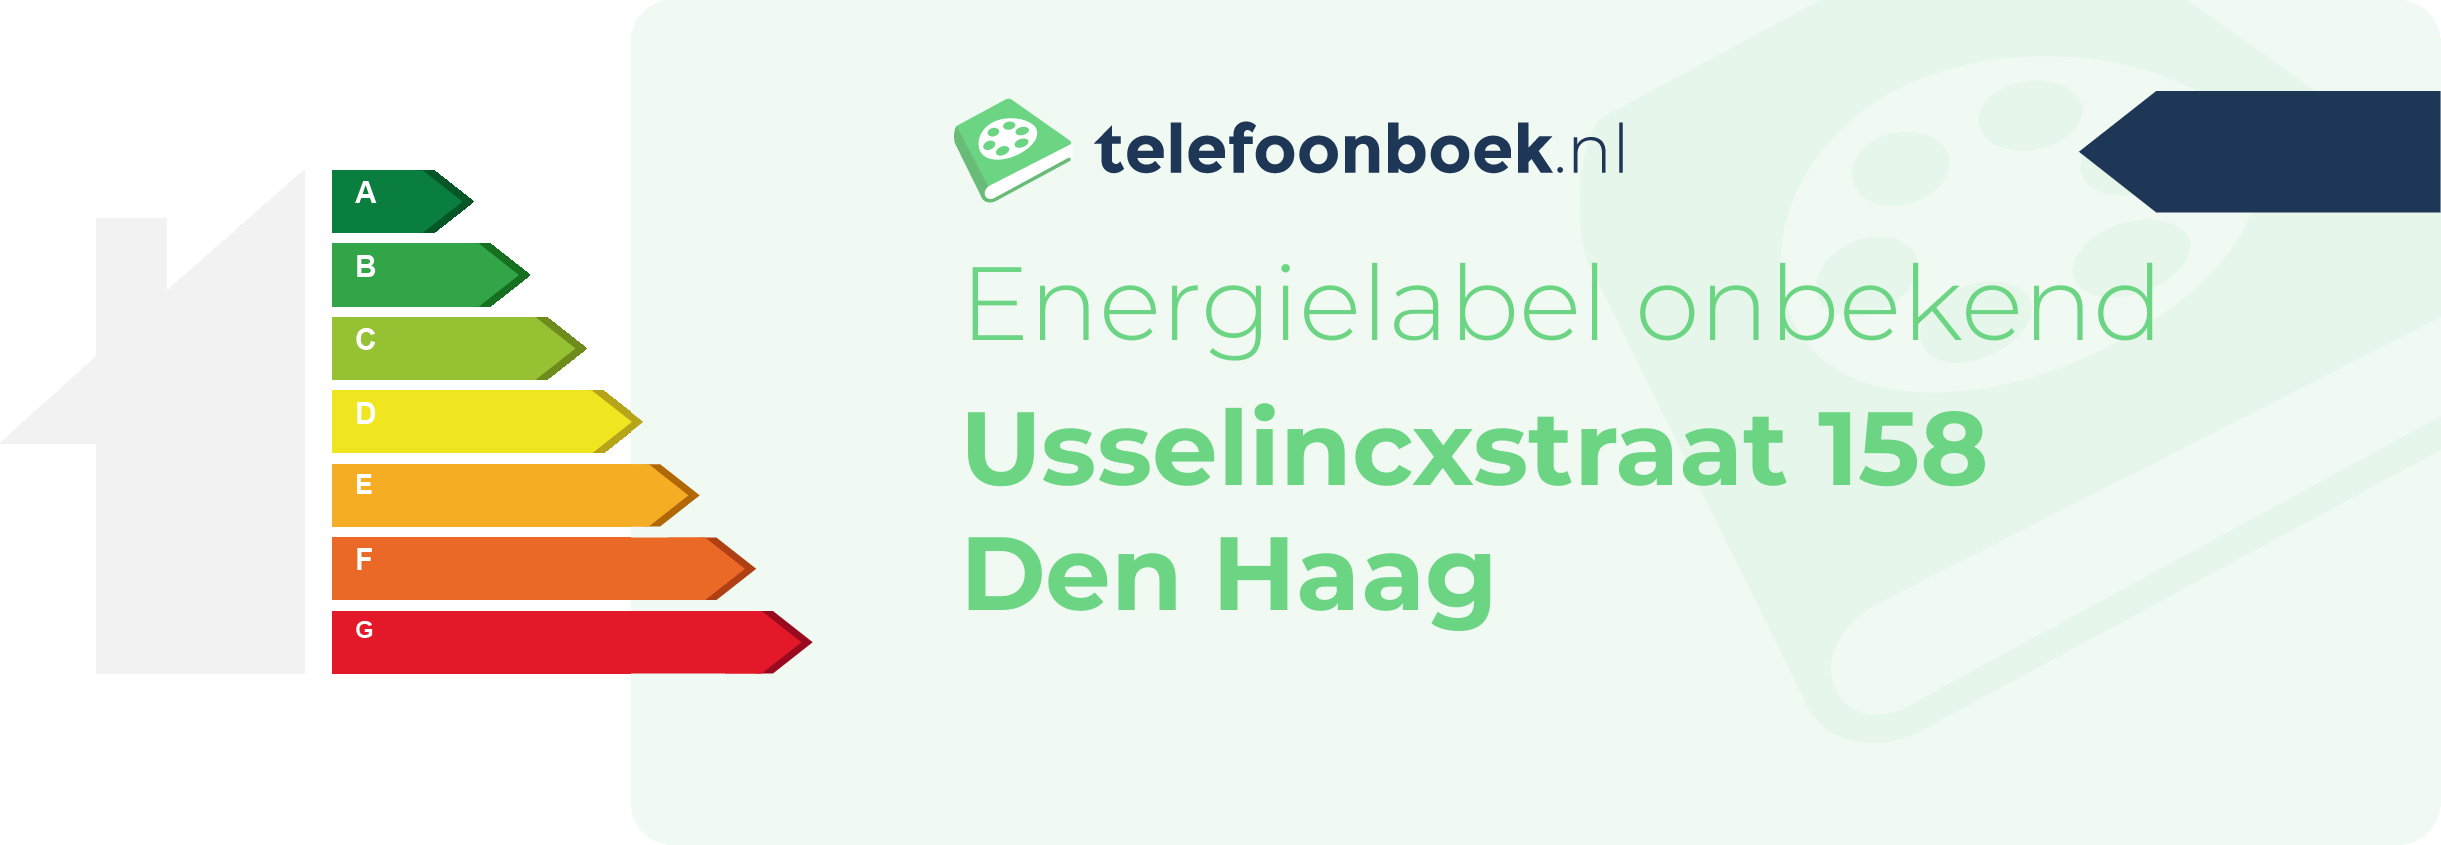 Energielabel Usselincxstraat 158 Den Haag